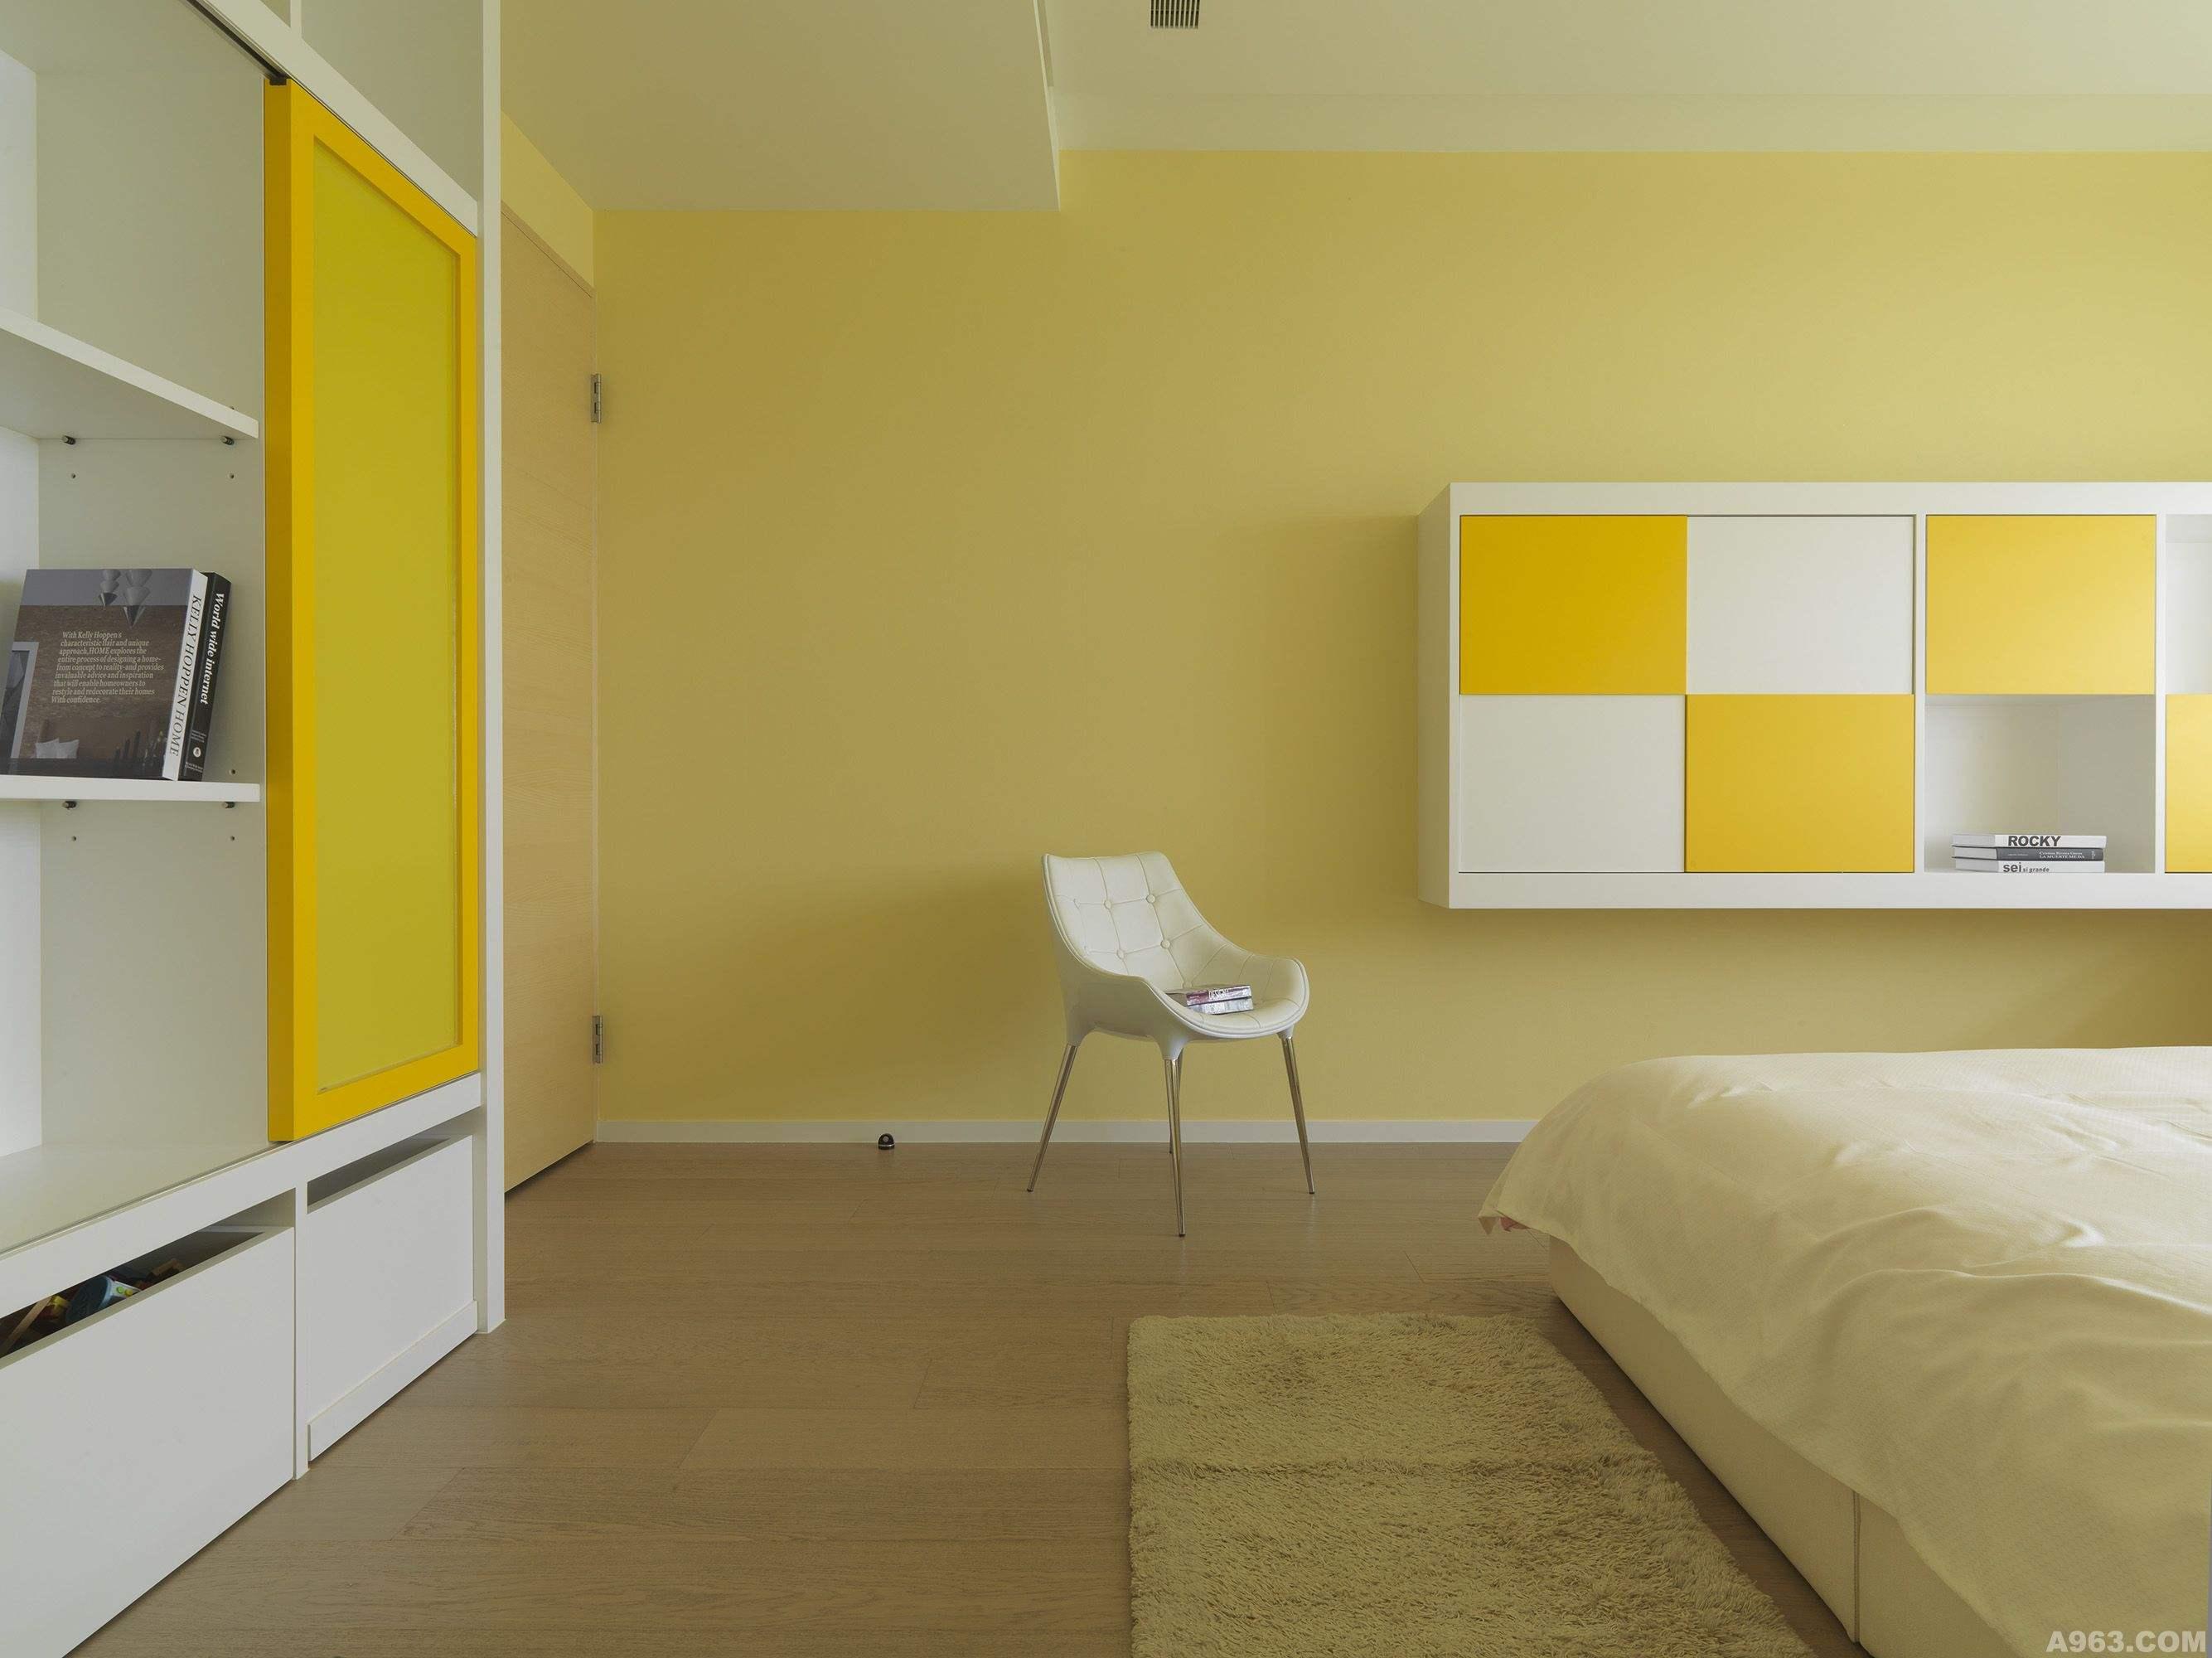 我家客厅其它几面墙准备用鹅黄色,而电视墙和餐厅准备这样弄(如图),怎样配色好呀!??请各位给个意见啊!!??谢谢-重庆装修-重庆房天下